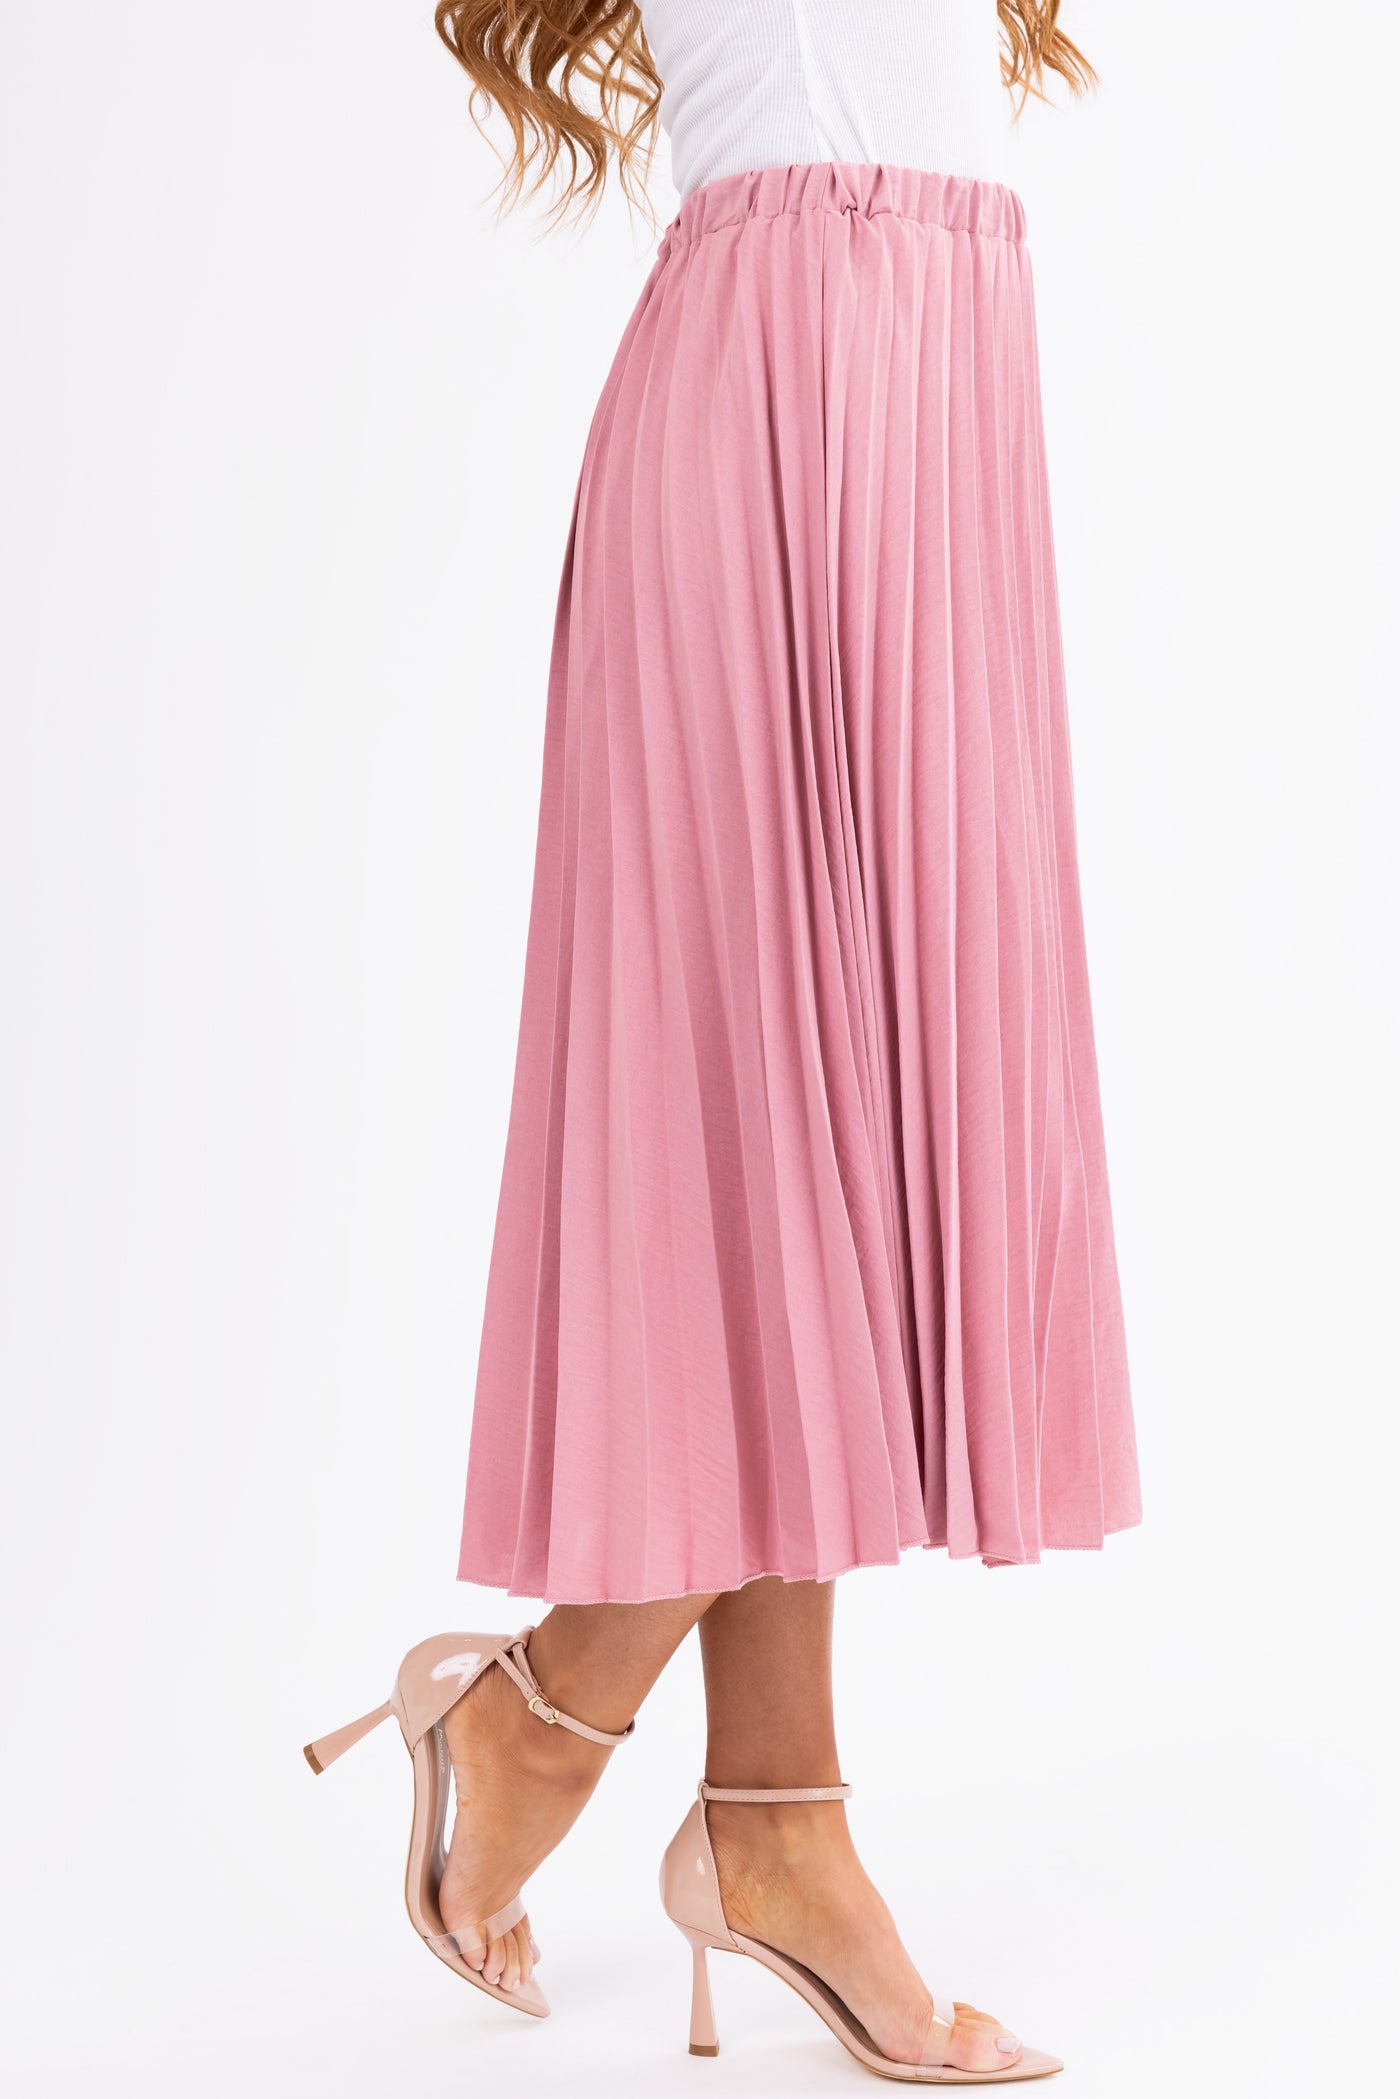 Hazy Pink Pleated Elastic Waist Midi Skirt